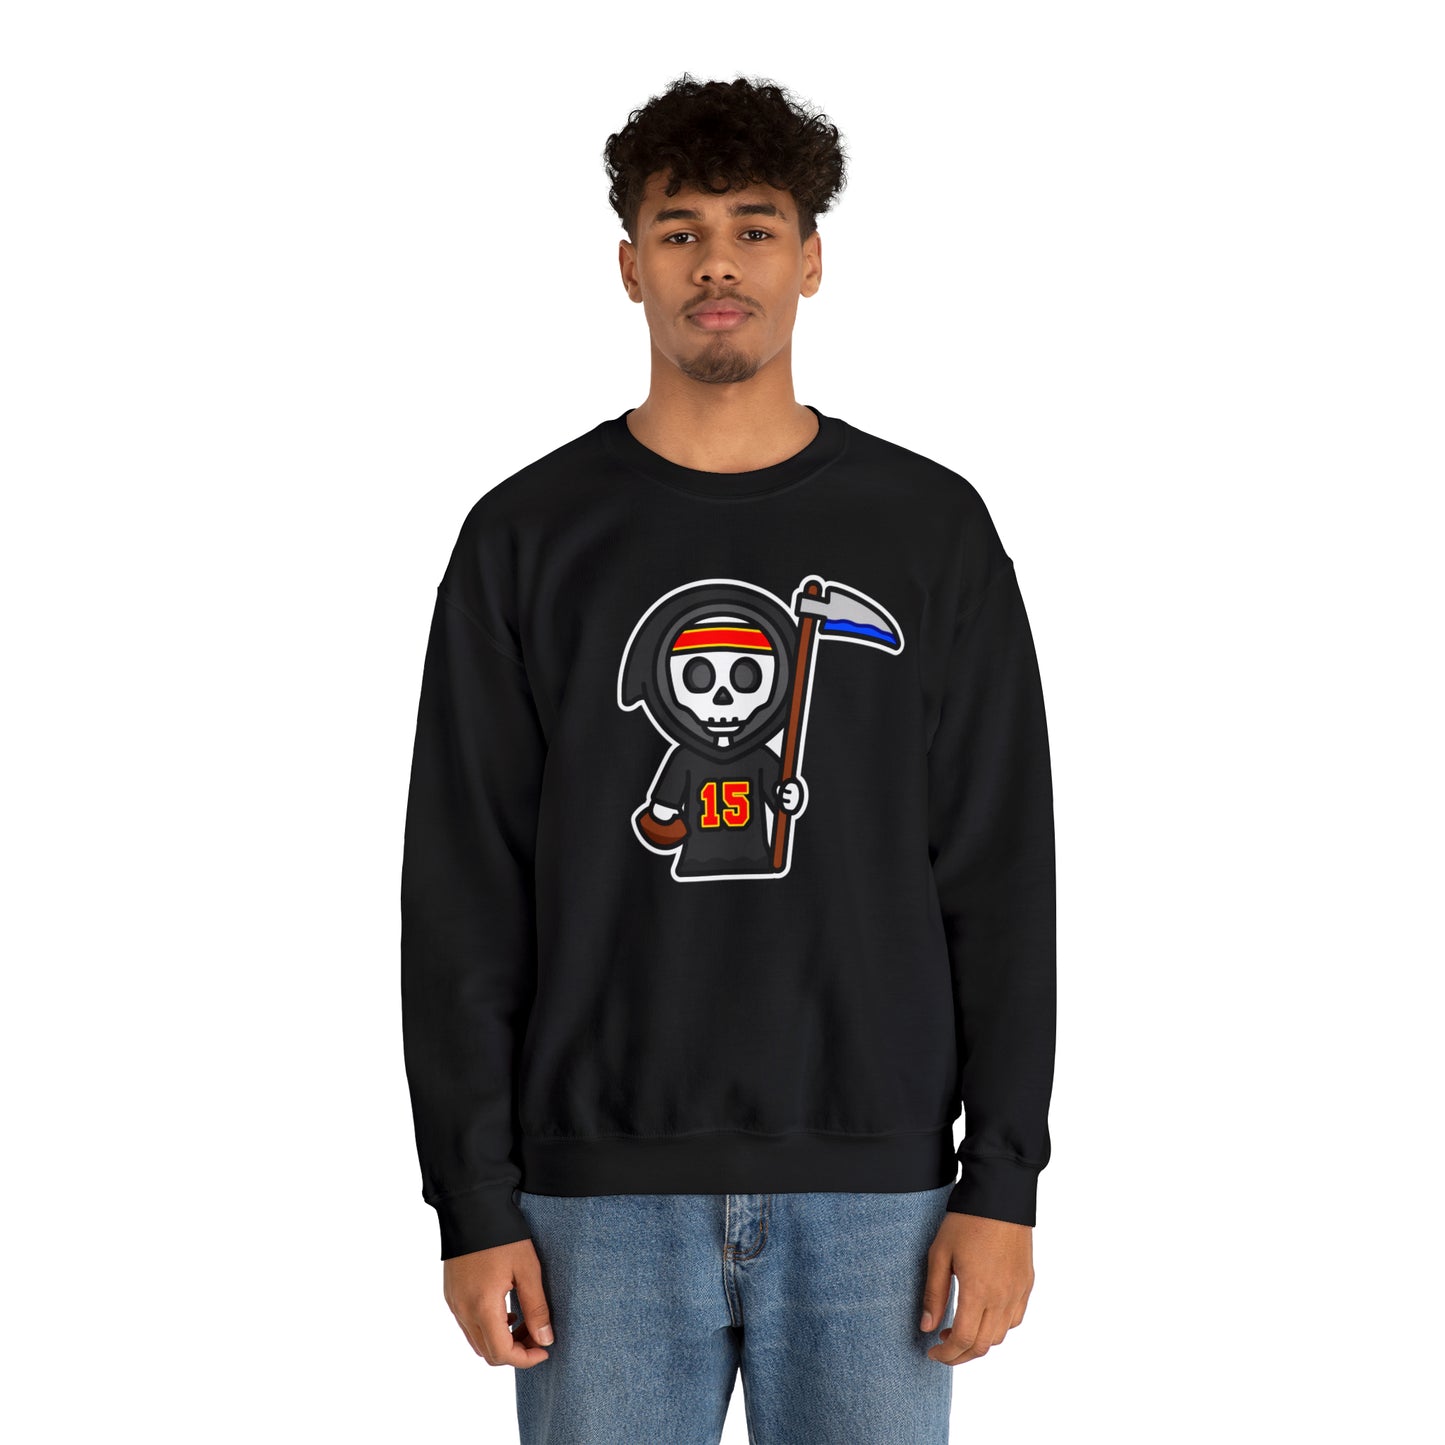 Grim Reaper Sweatshirt